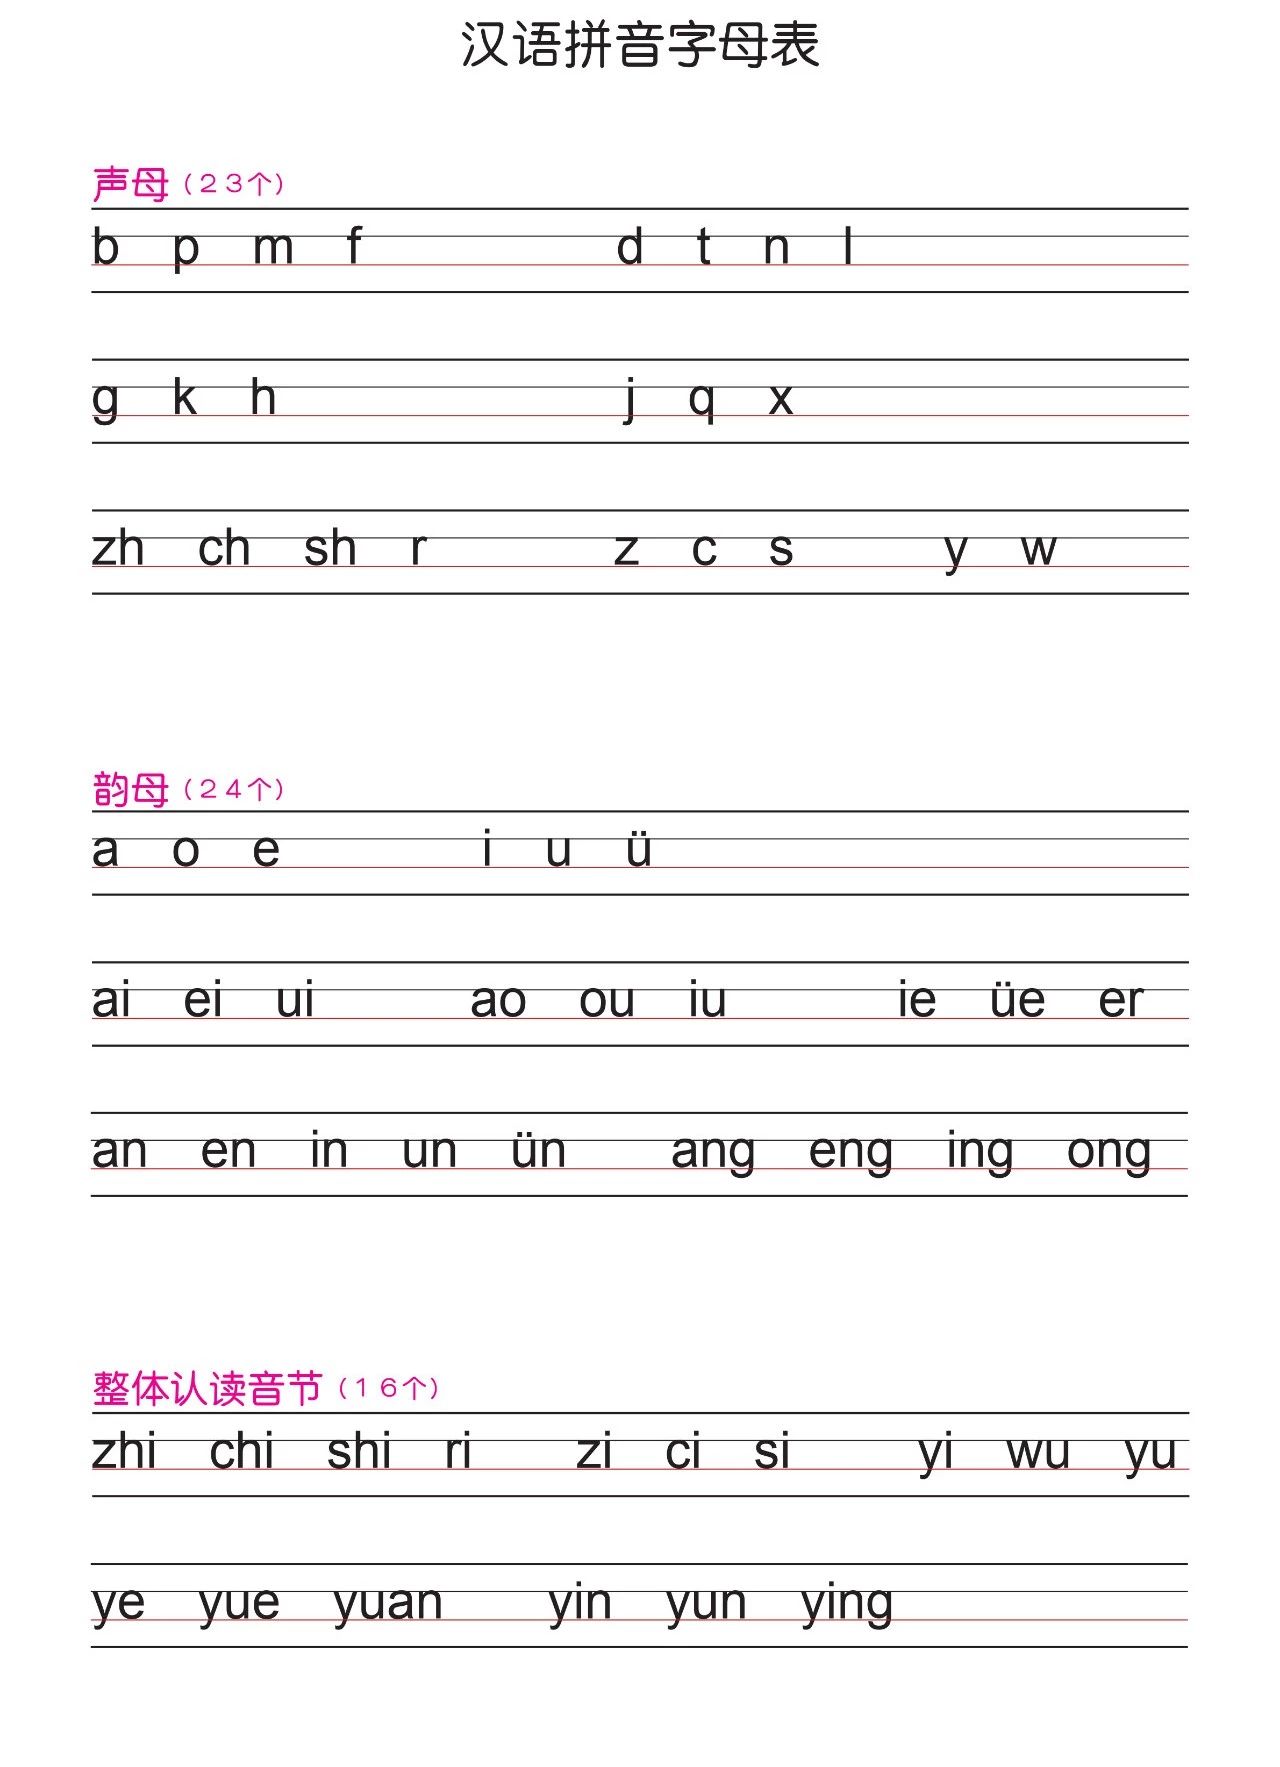 汉语拼音字母表 幼儿26个拼音字母表